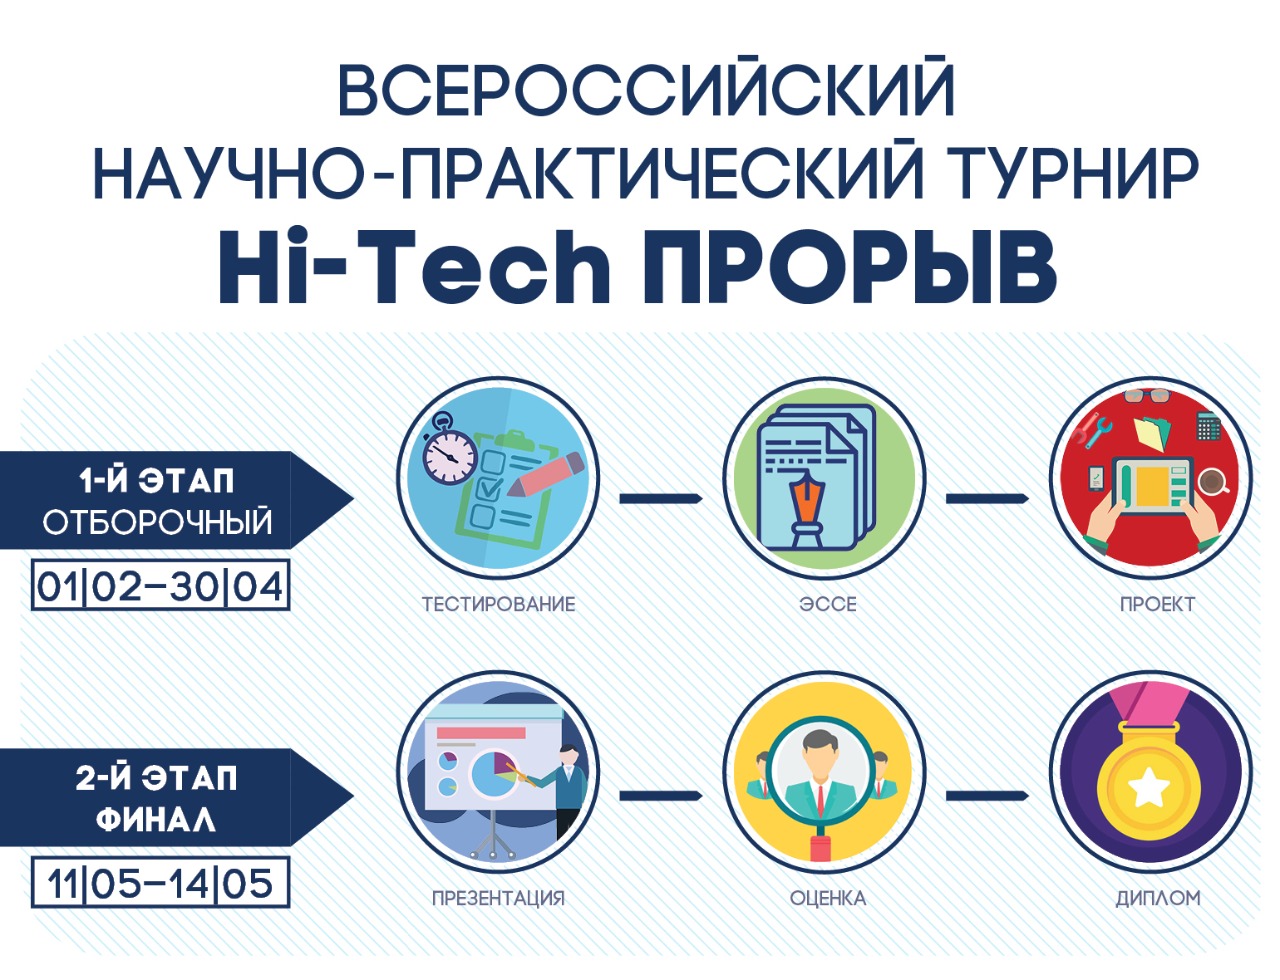 Всероссийский научно-практический турнир «Hi-Tech прорыв»